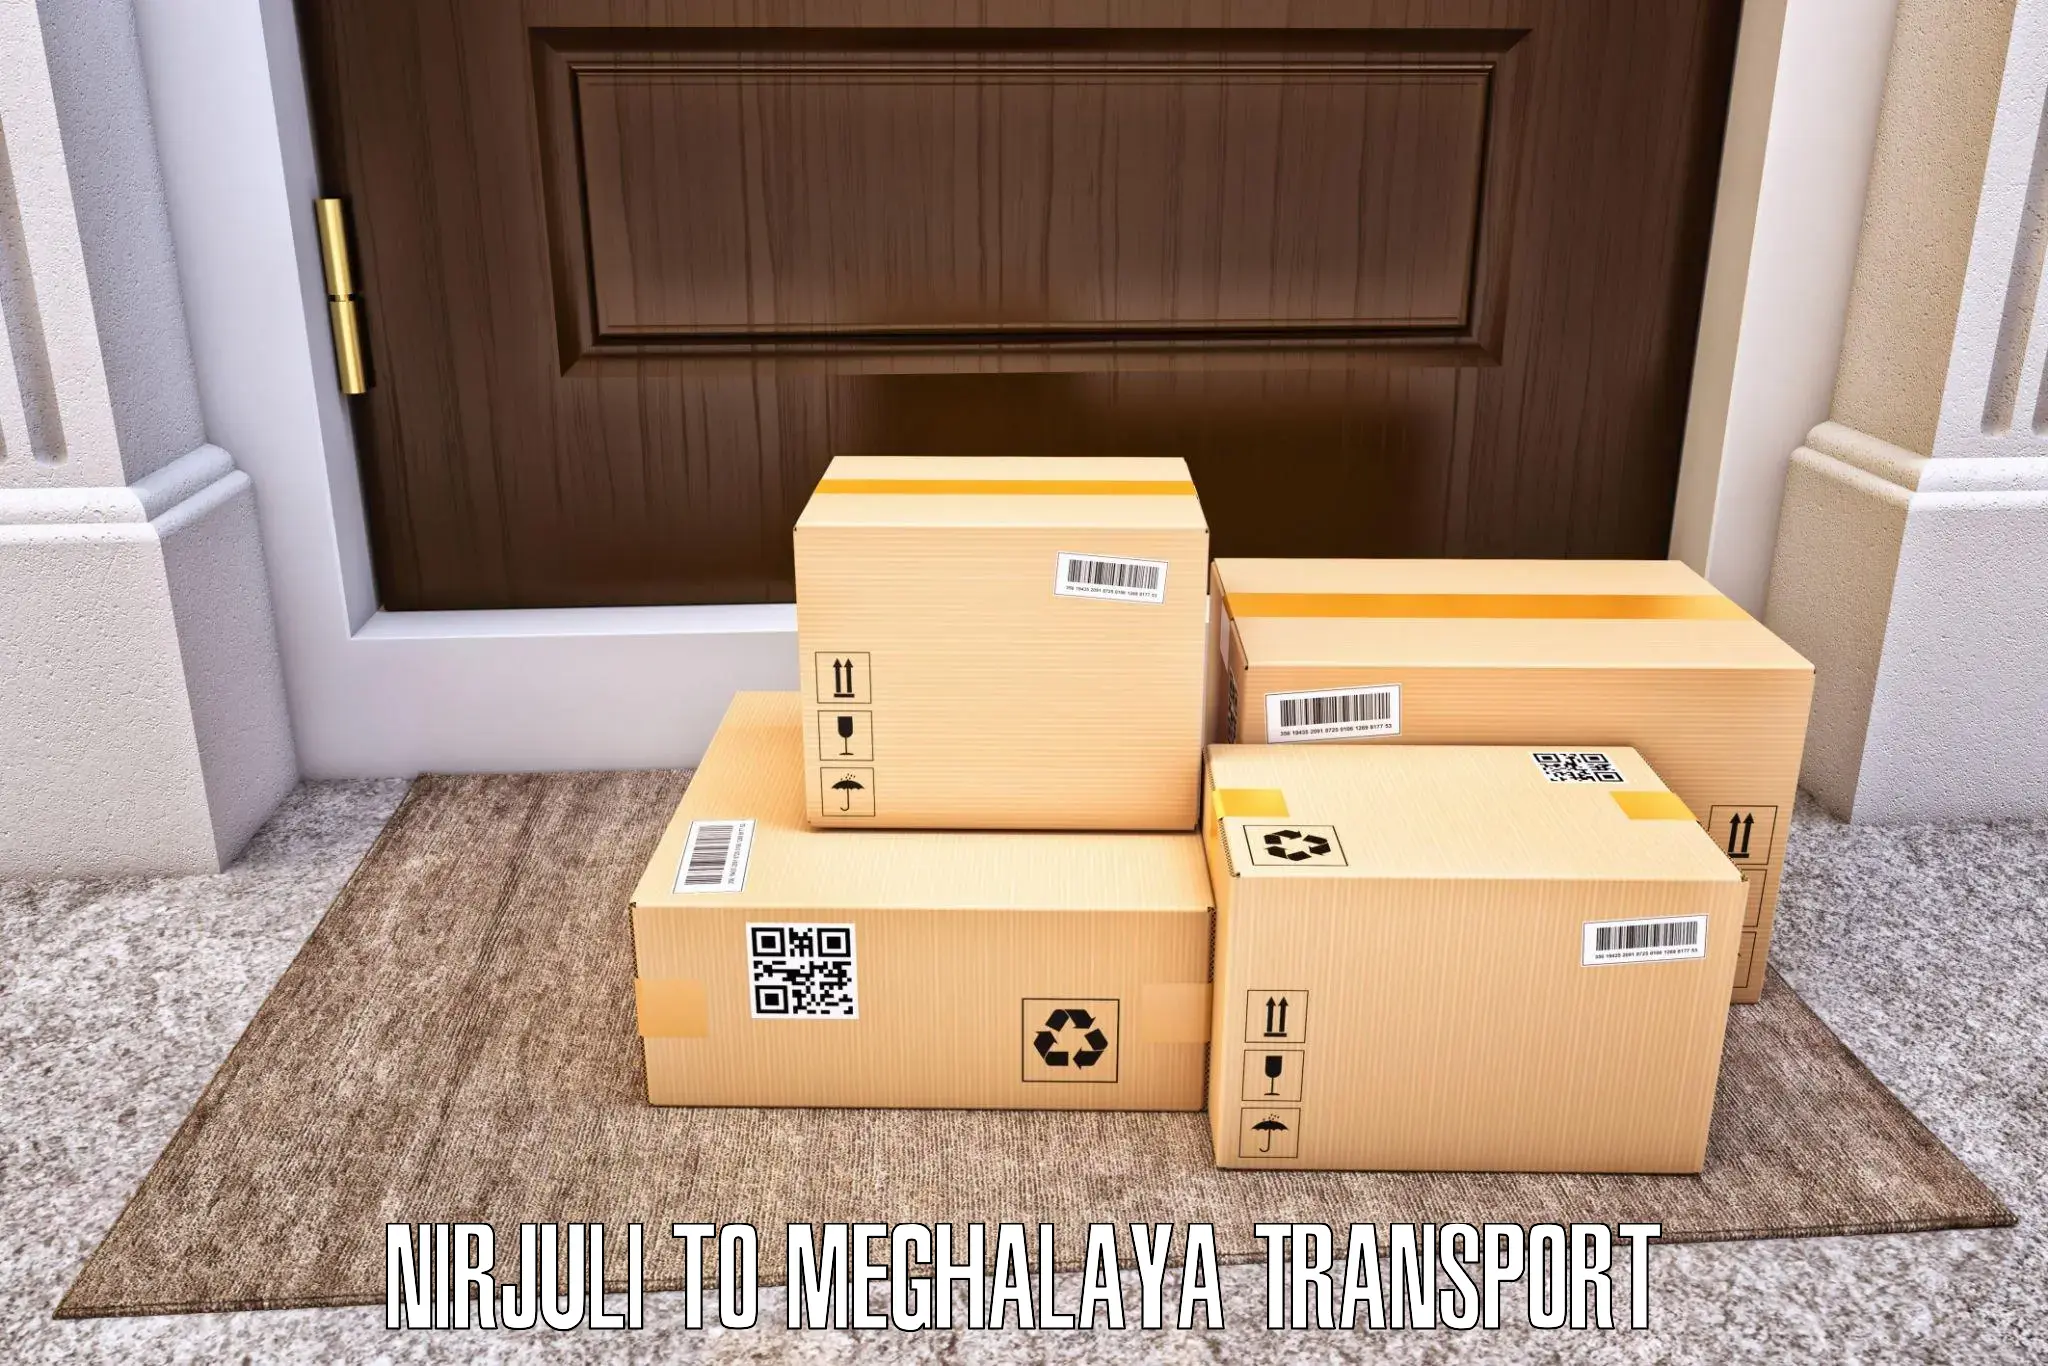 Cargo transport services Nirjuli to Garobadha